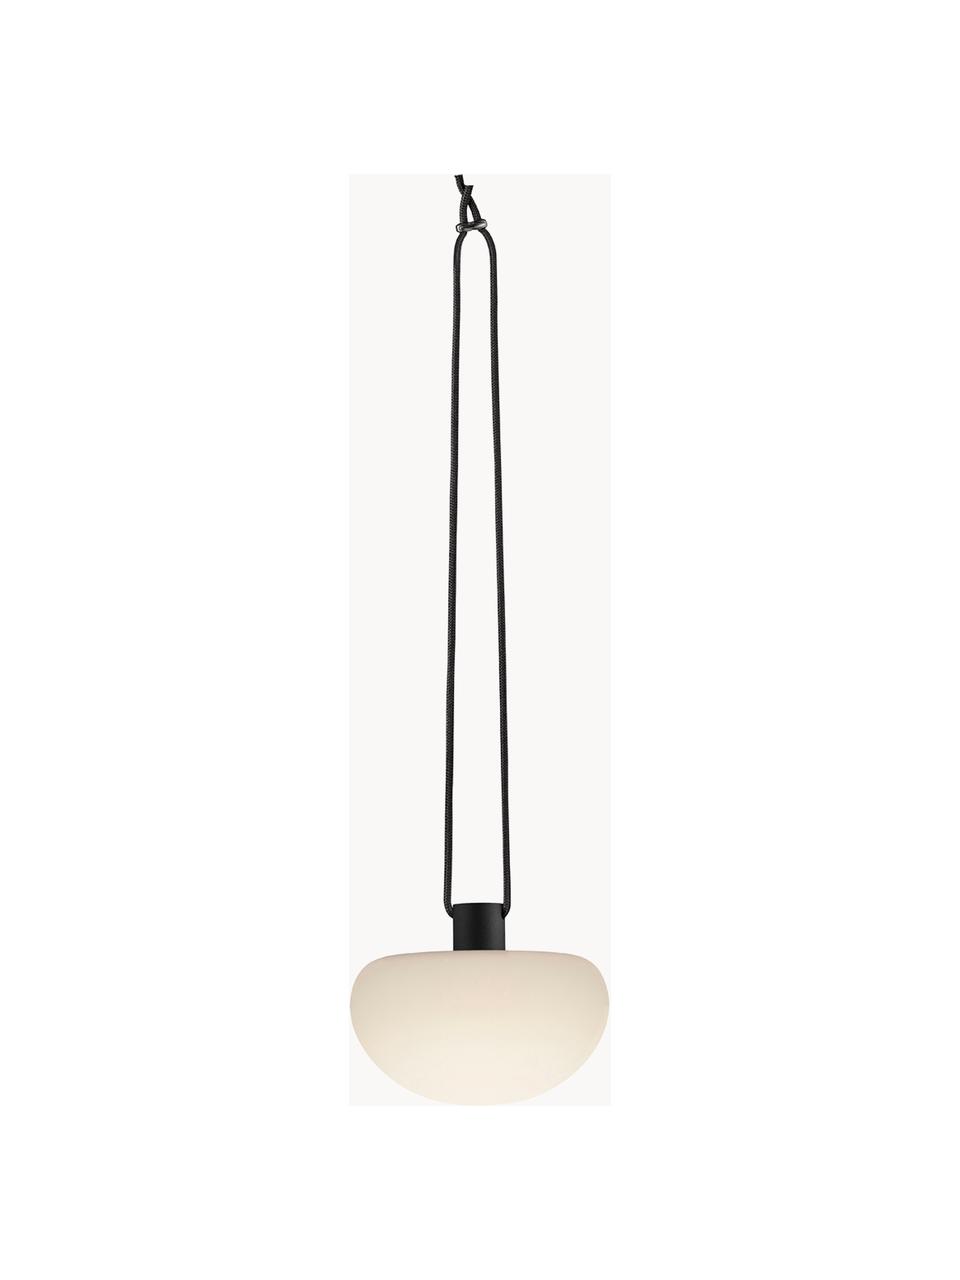 Mobiele dimbare hanglamp Sponge, Lampenkap: kunststof, Wit, zwart, Ø 20 x H 16 cm